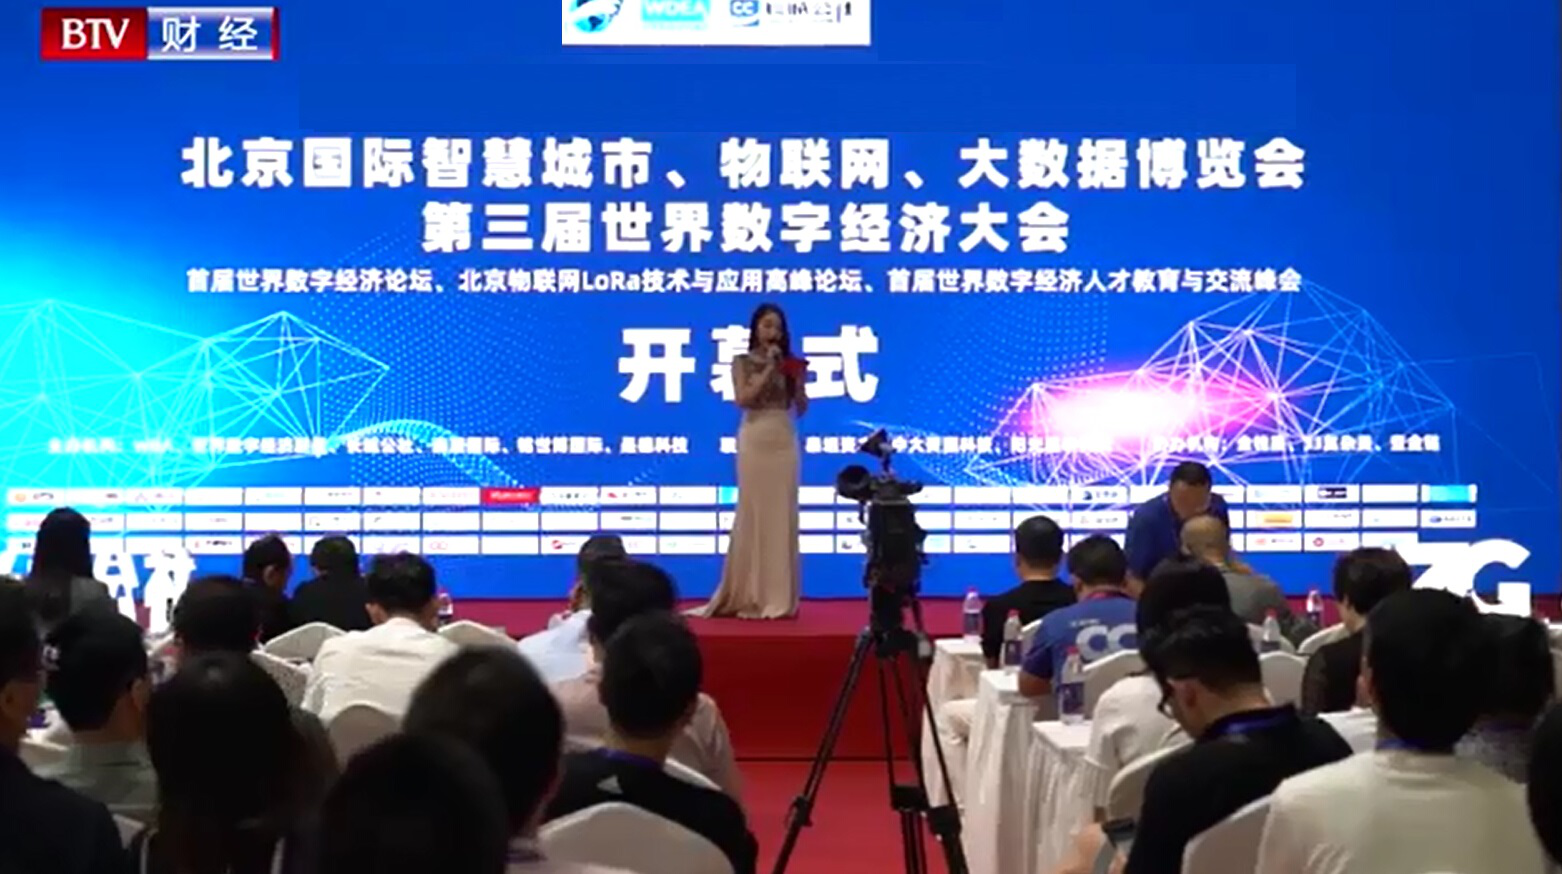 官宣,AIOTE2020北京智博会,将延期至2021年6月举办